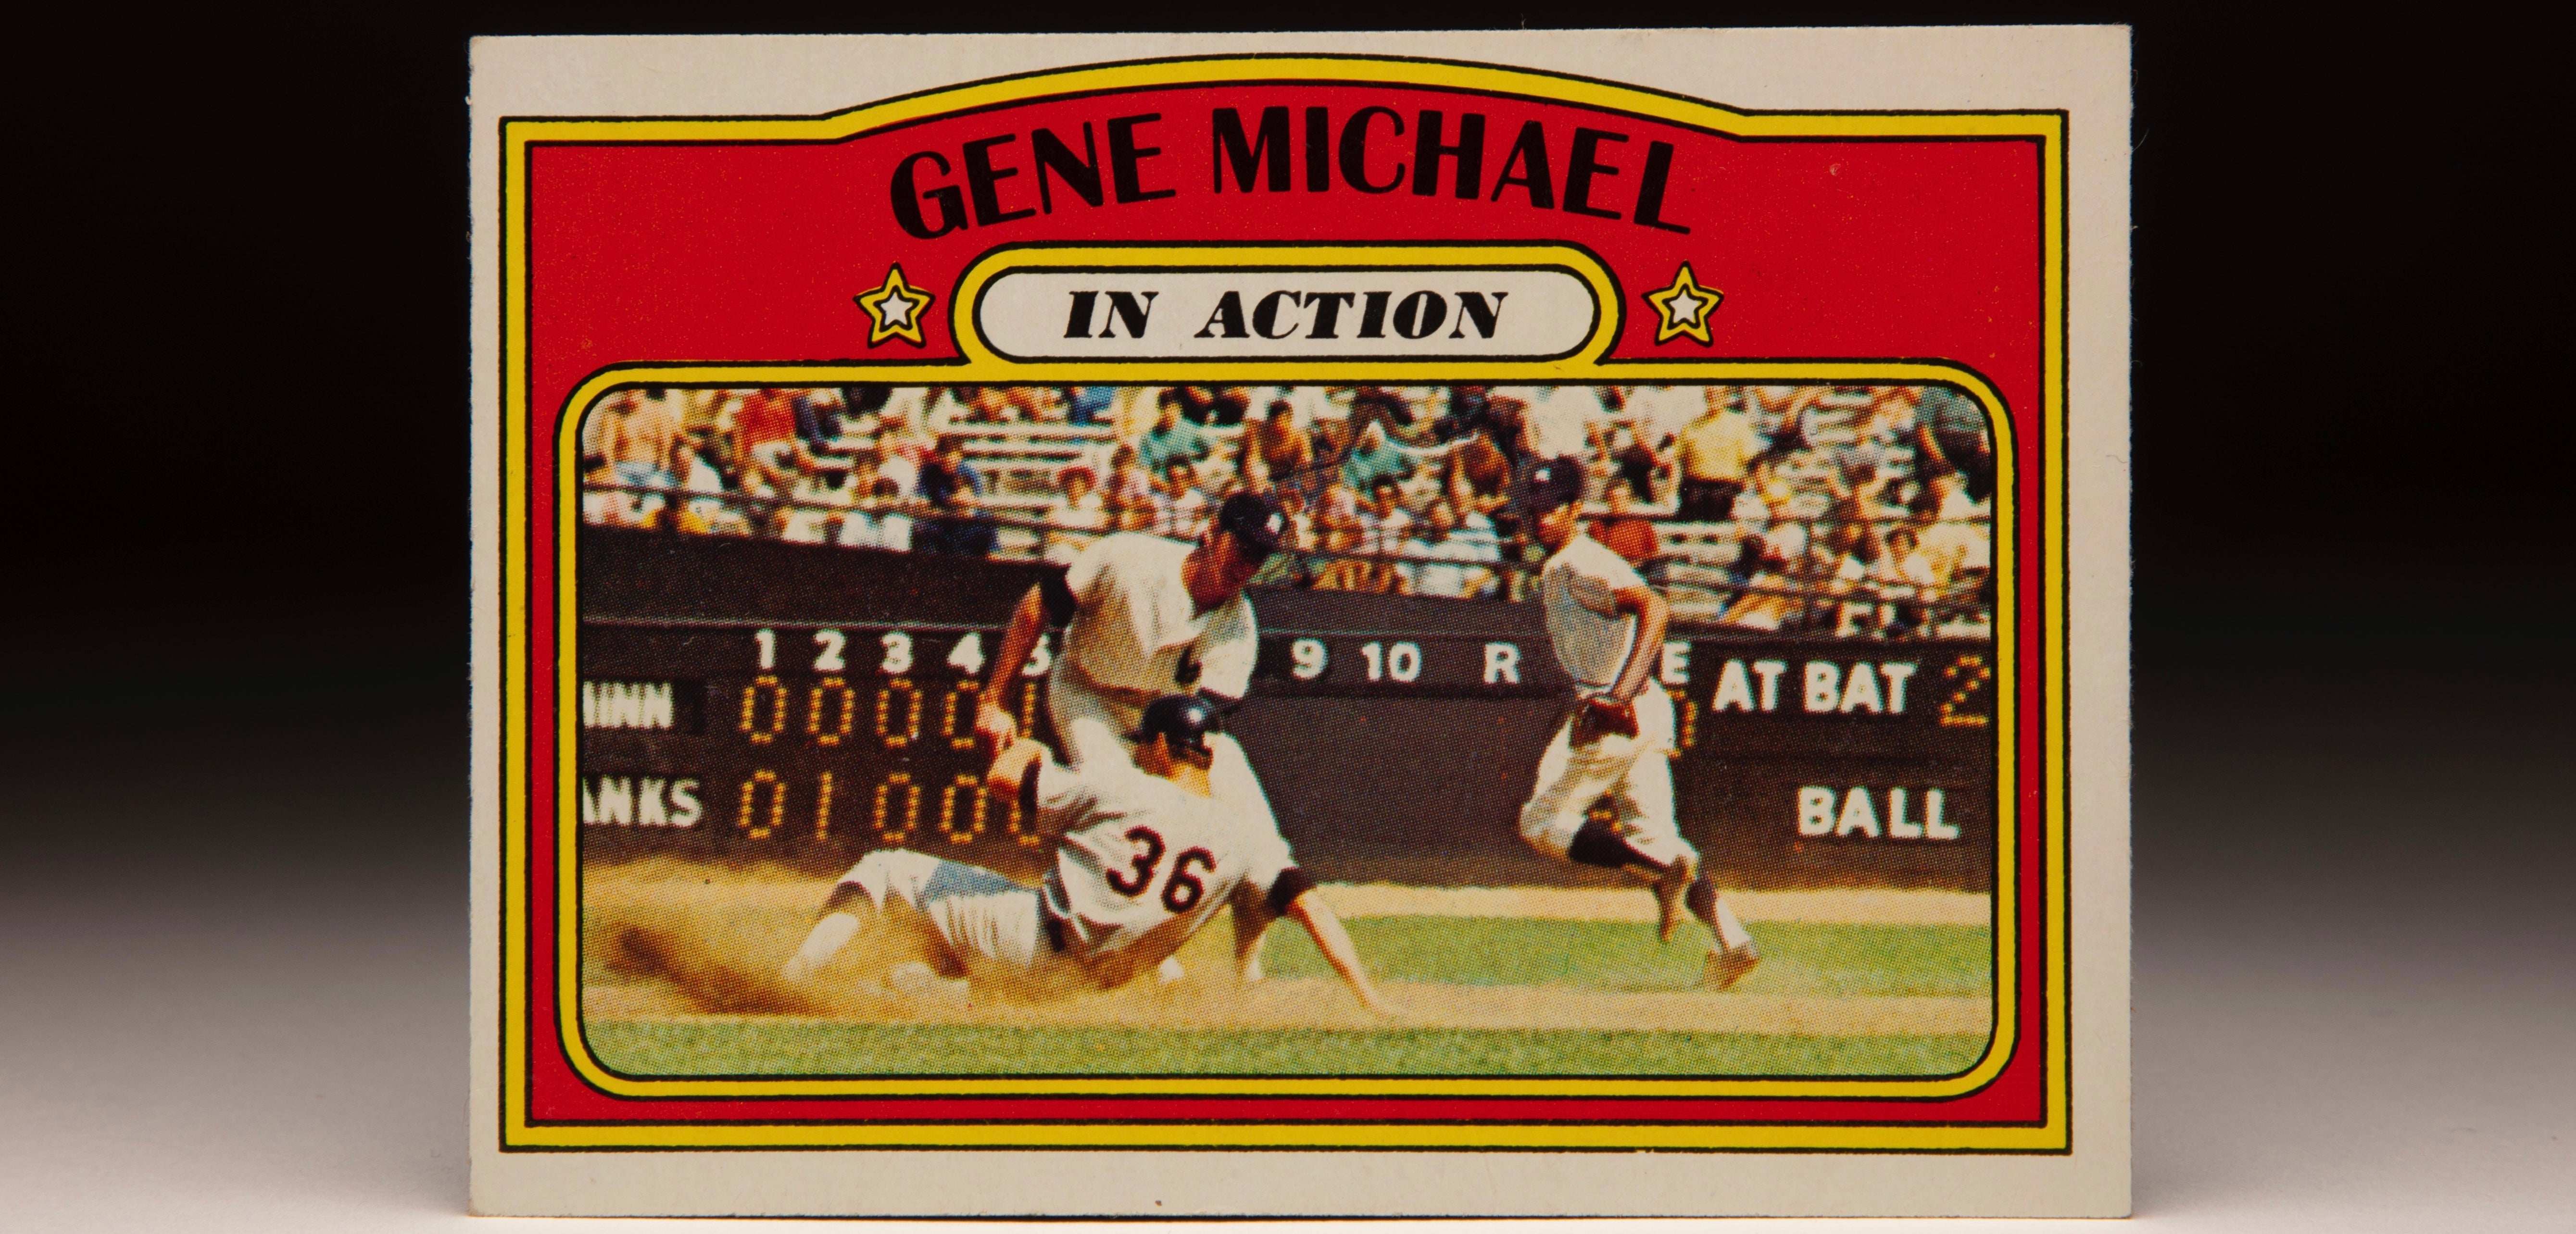 #CardCorner: 1972 Topps Gene Michael